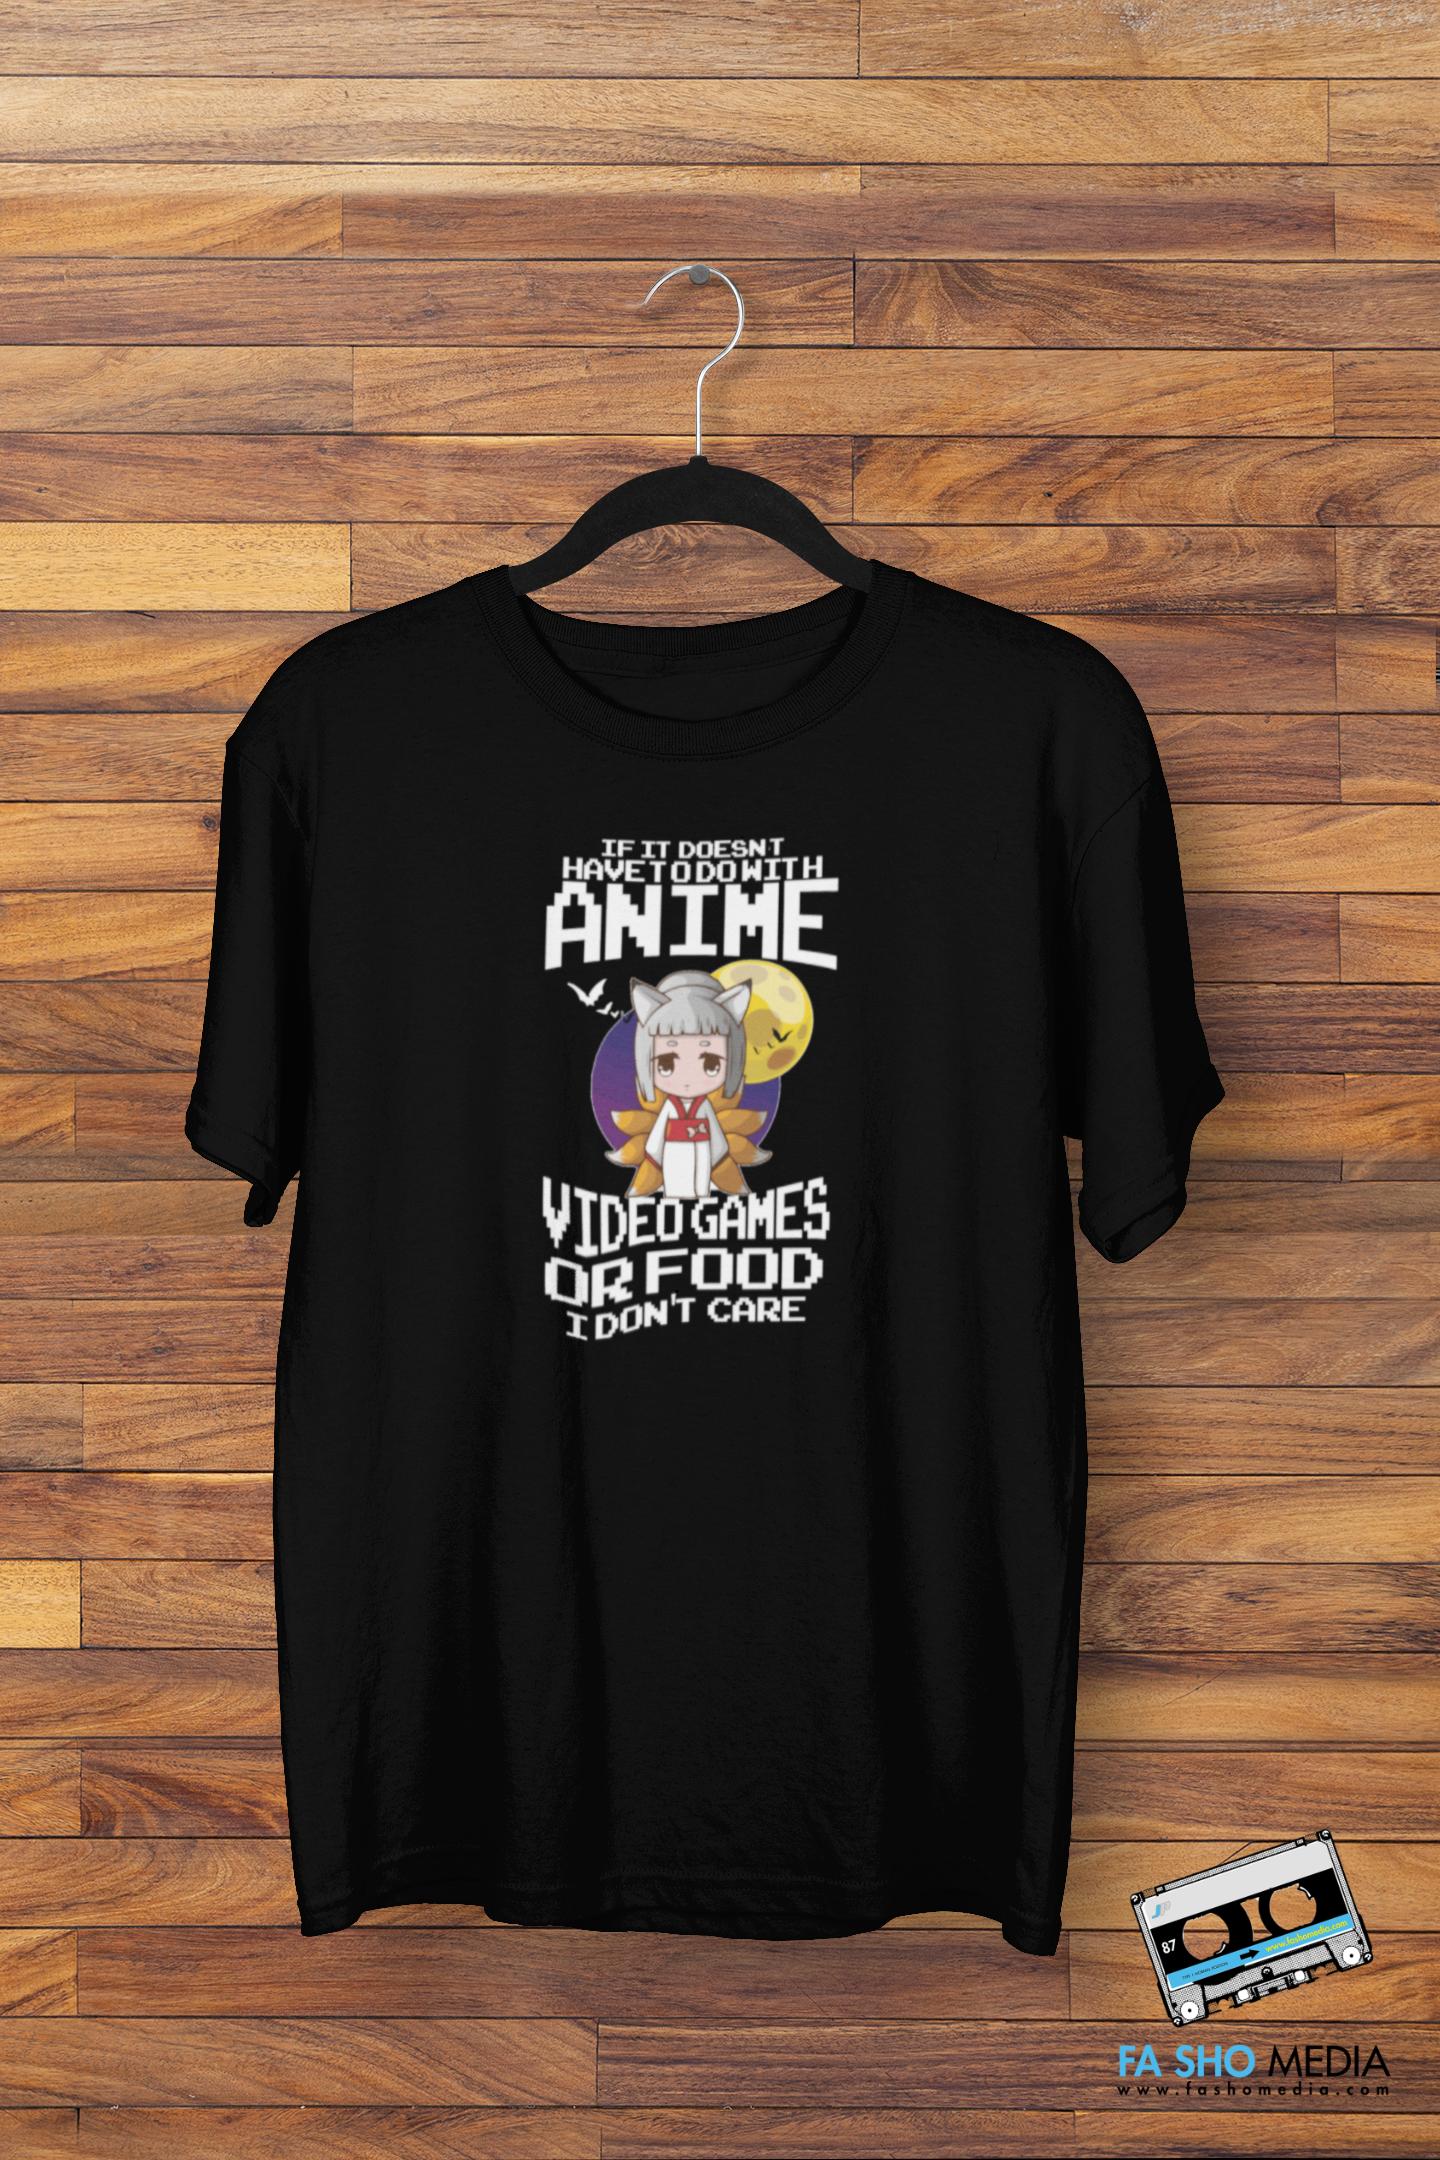 Anime Love Shirt